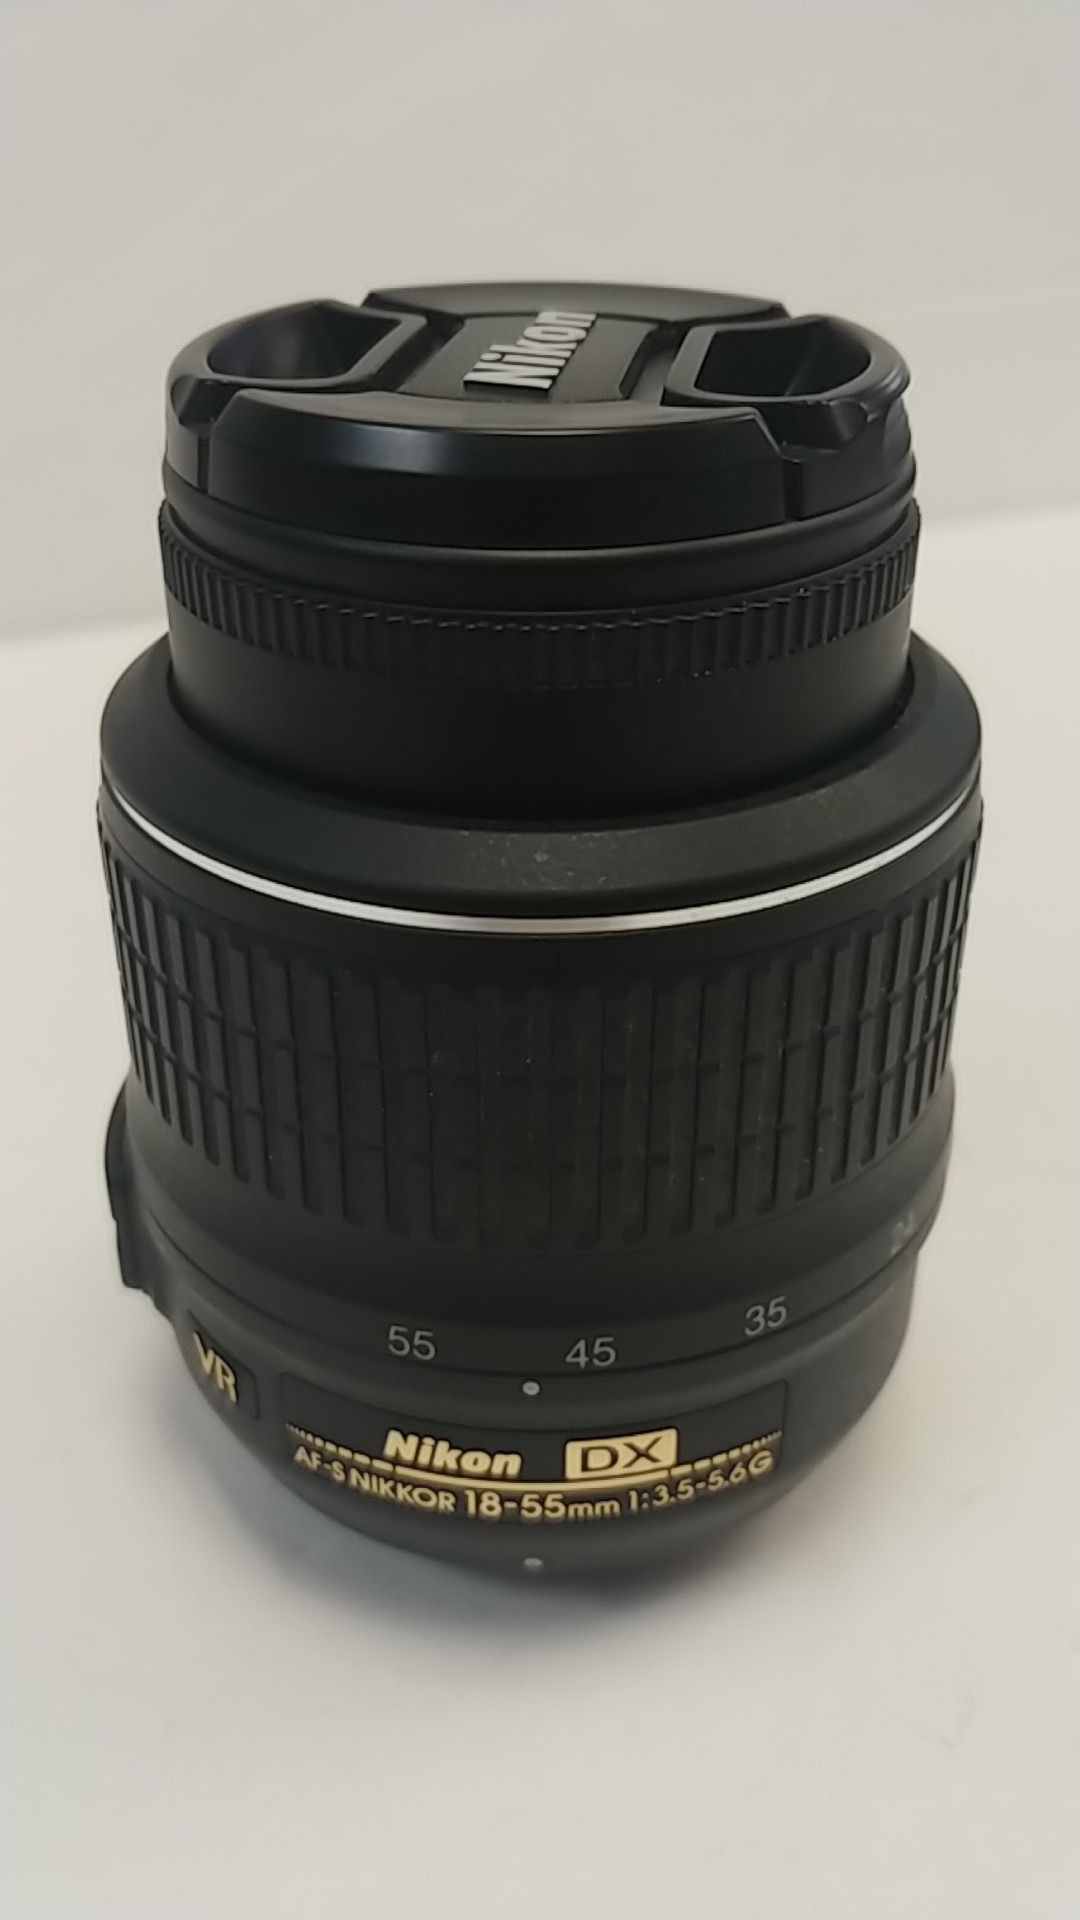 Nikon lens dx at-s